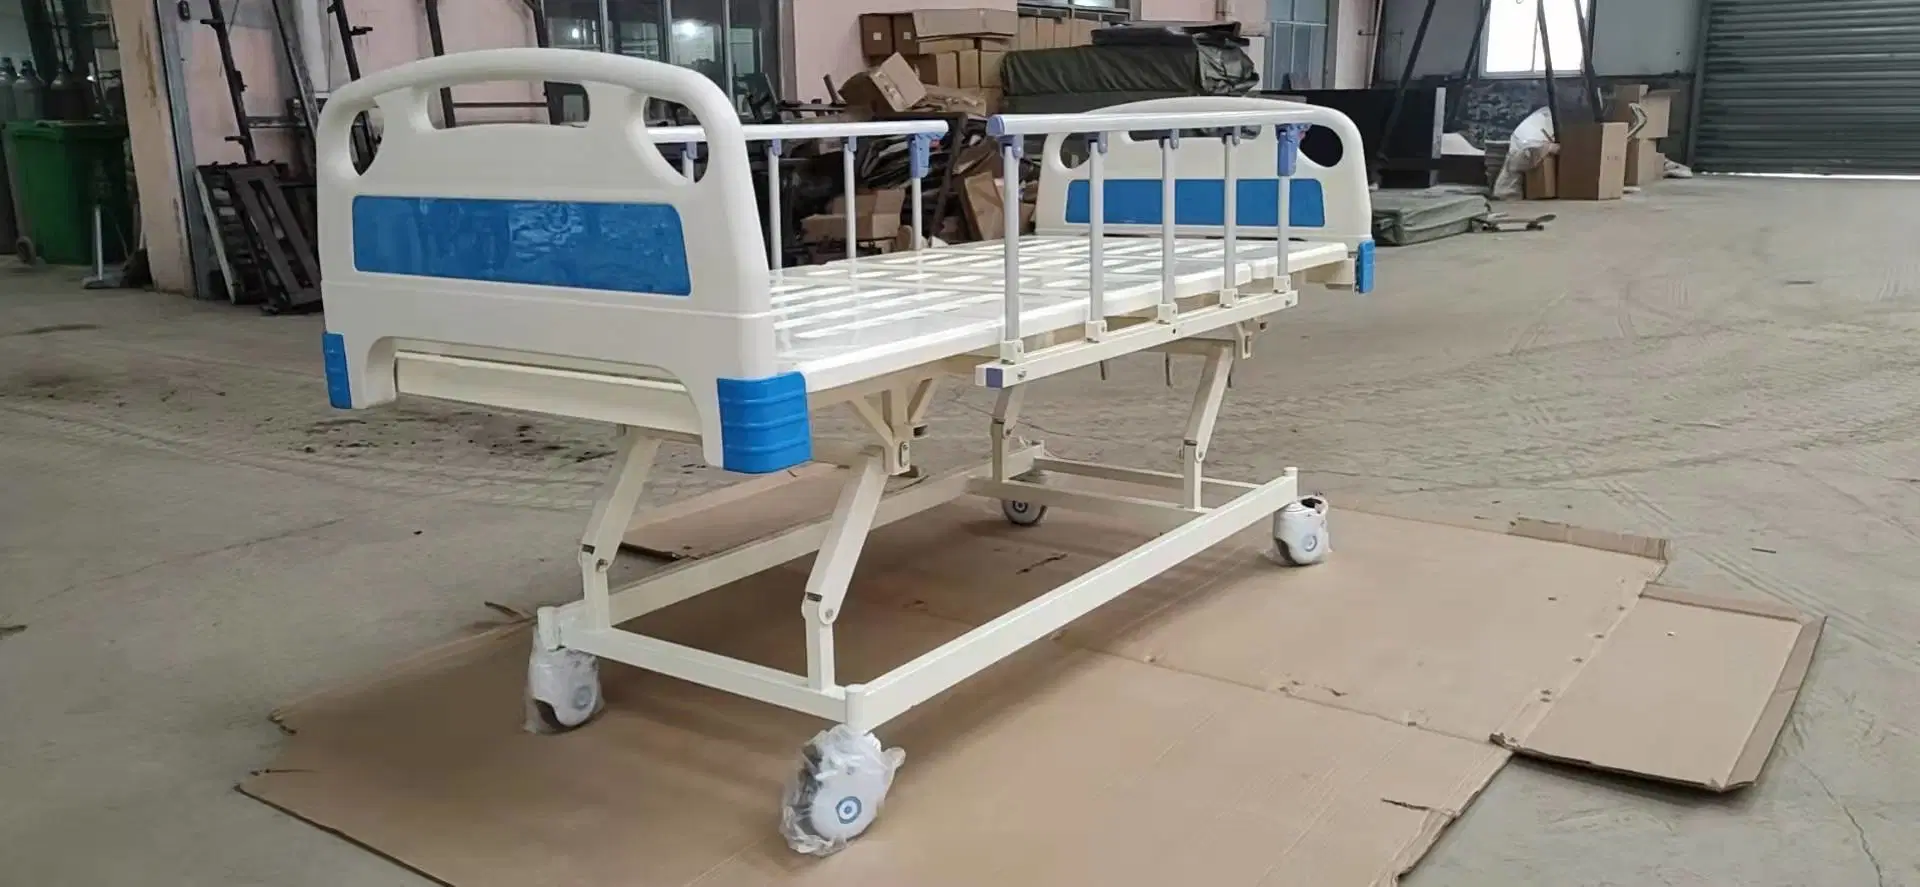 Lits de soins OEM Home soins infirmiers mobilier multifonction clinique patient Hôpital Produits médicaux de lit